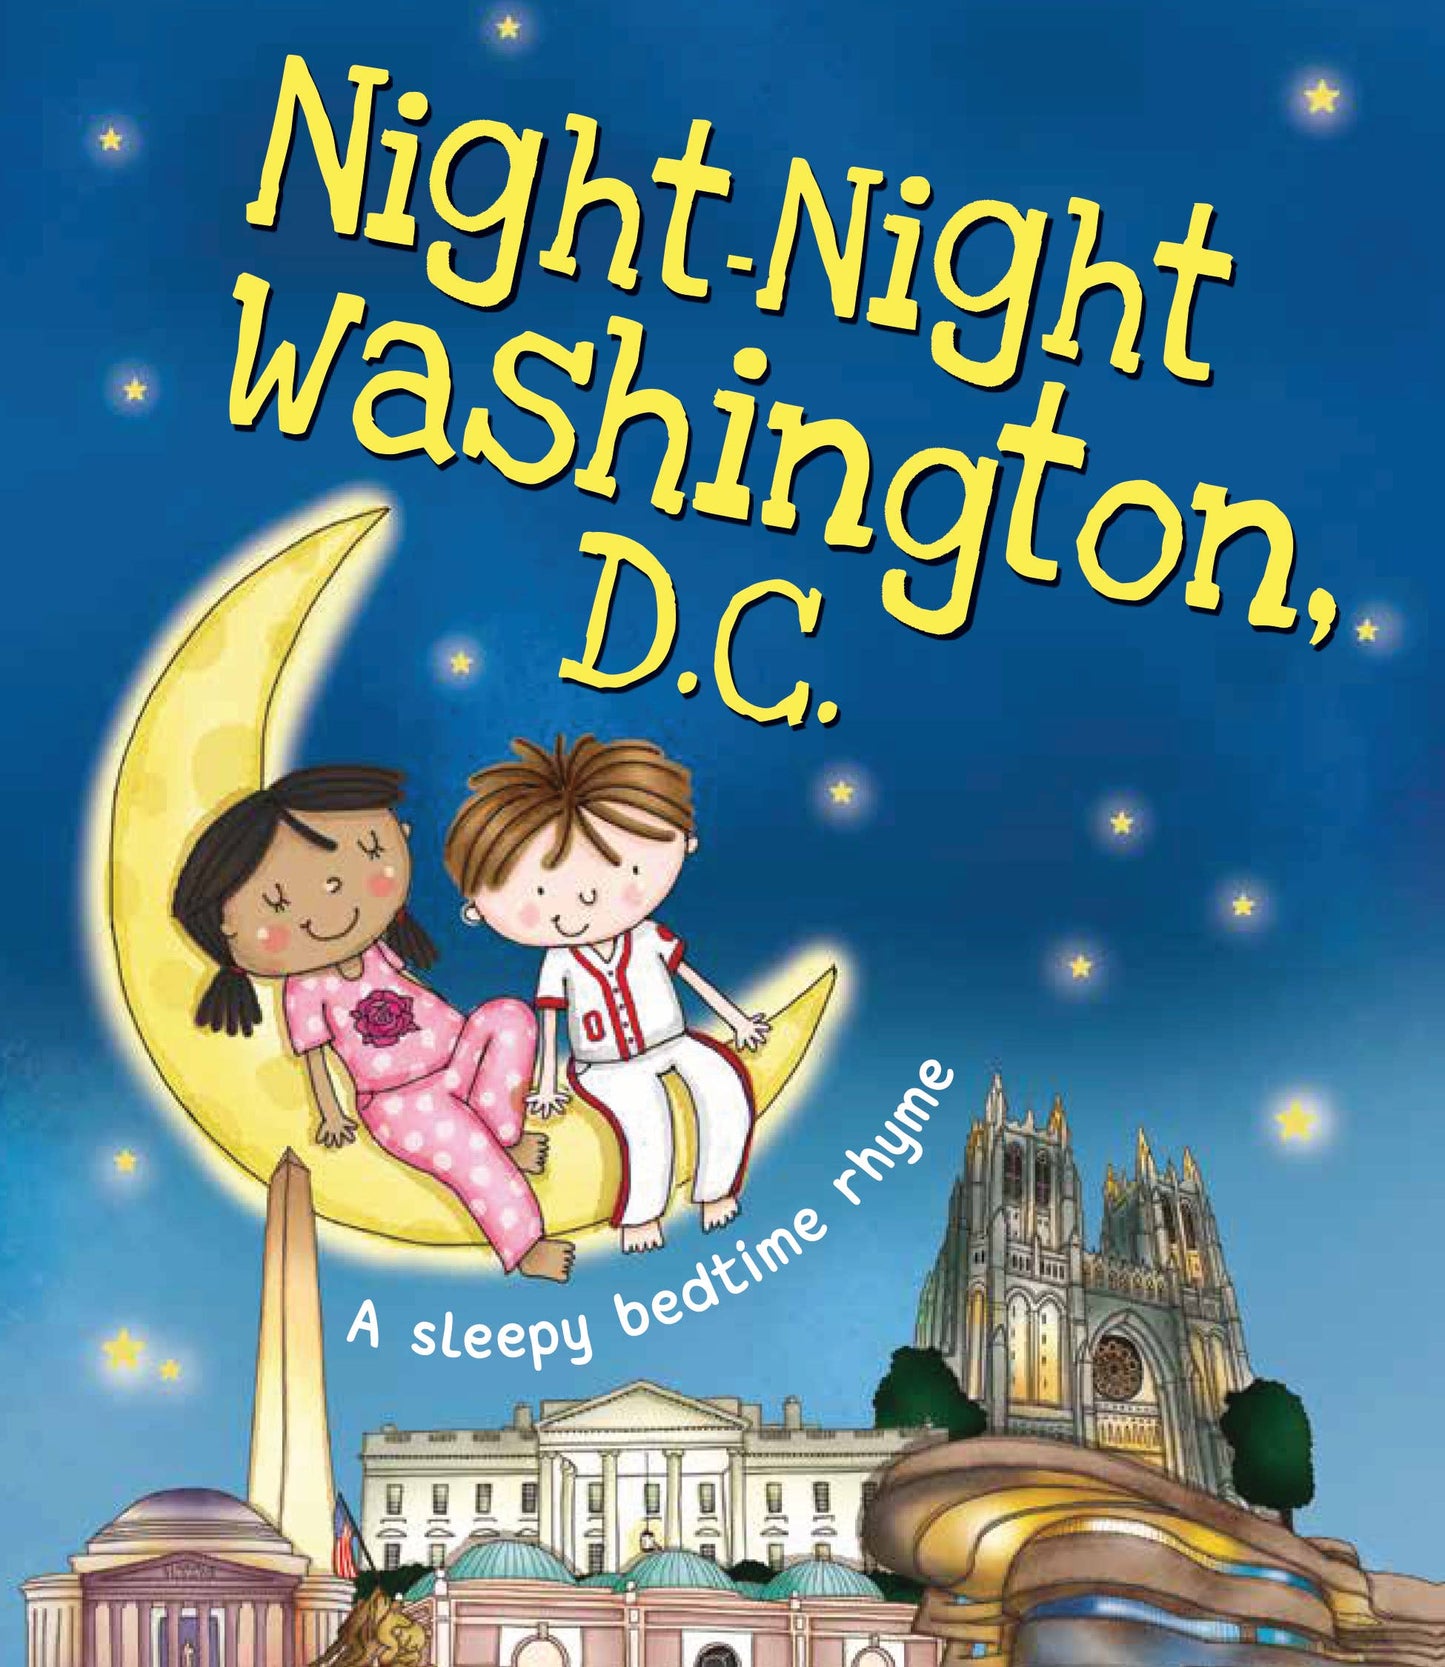 Night-Night Washington D.C.